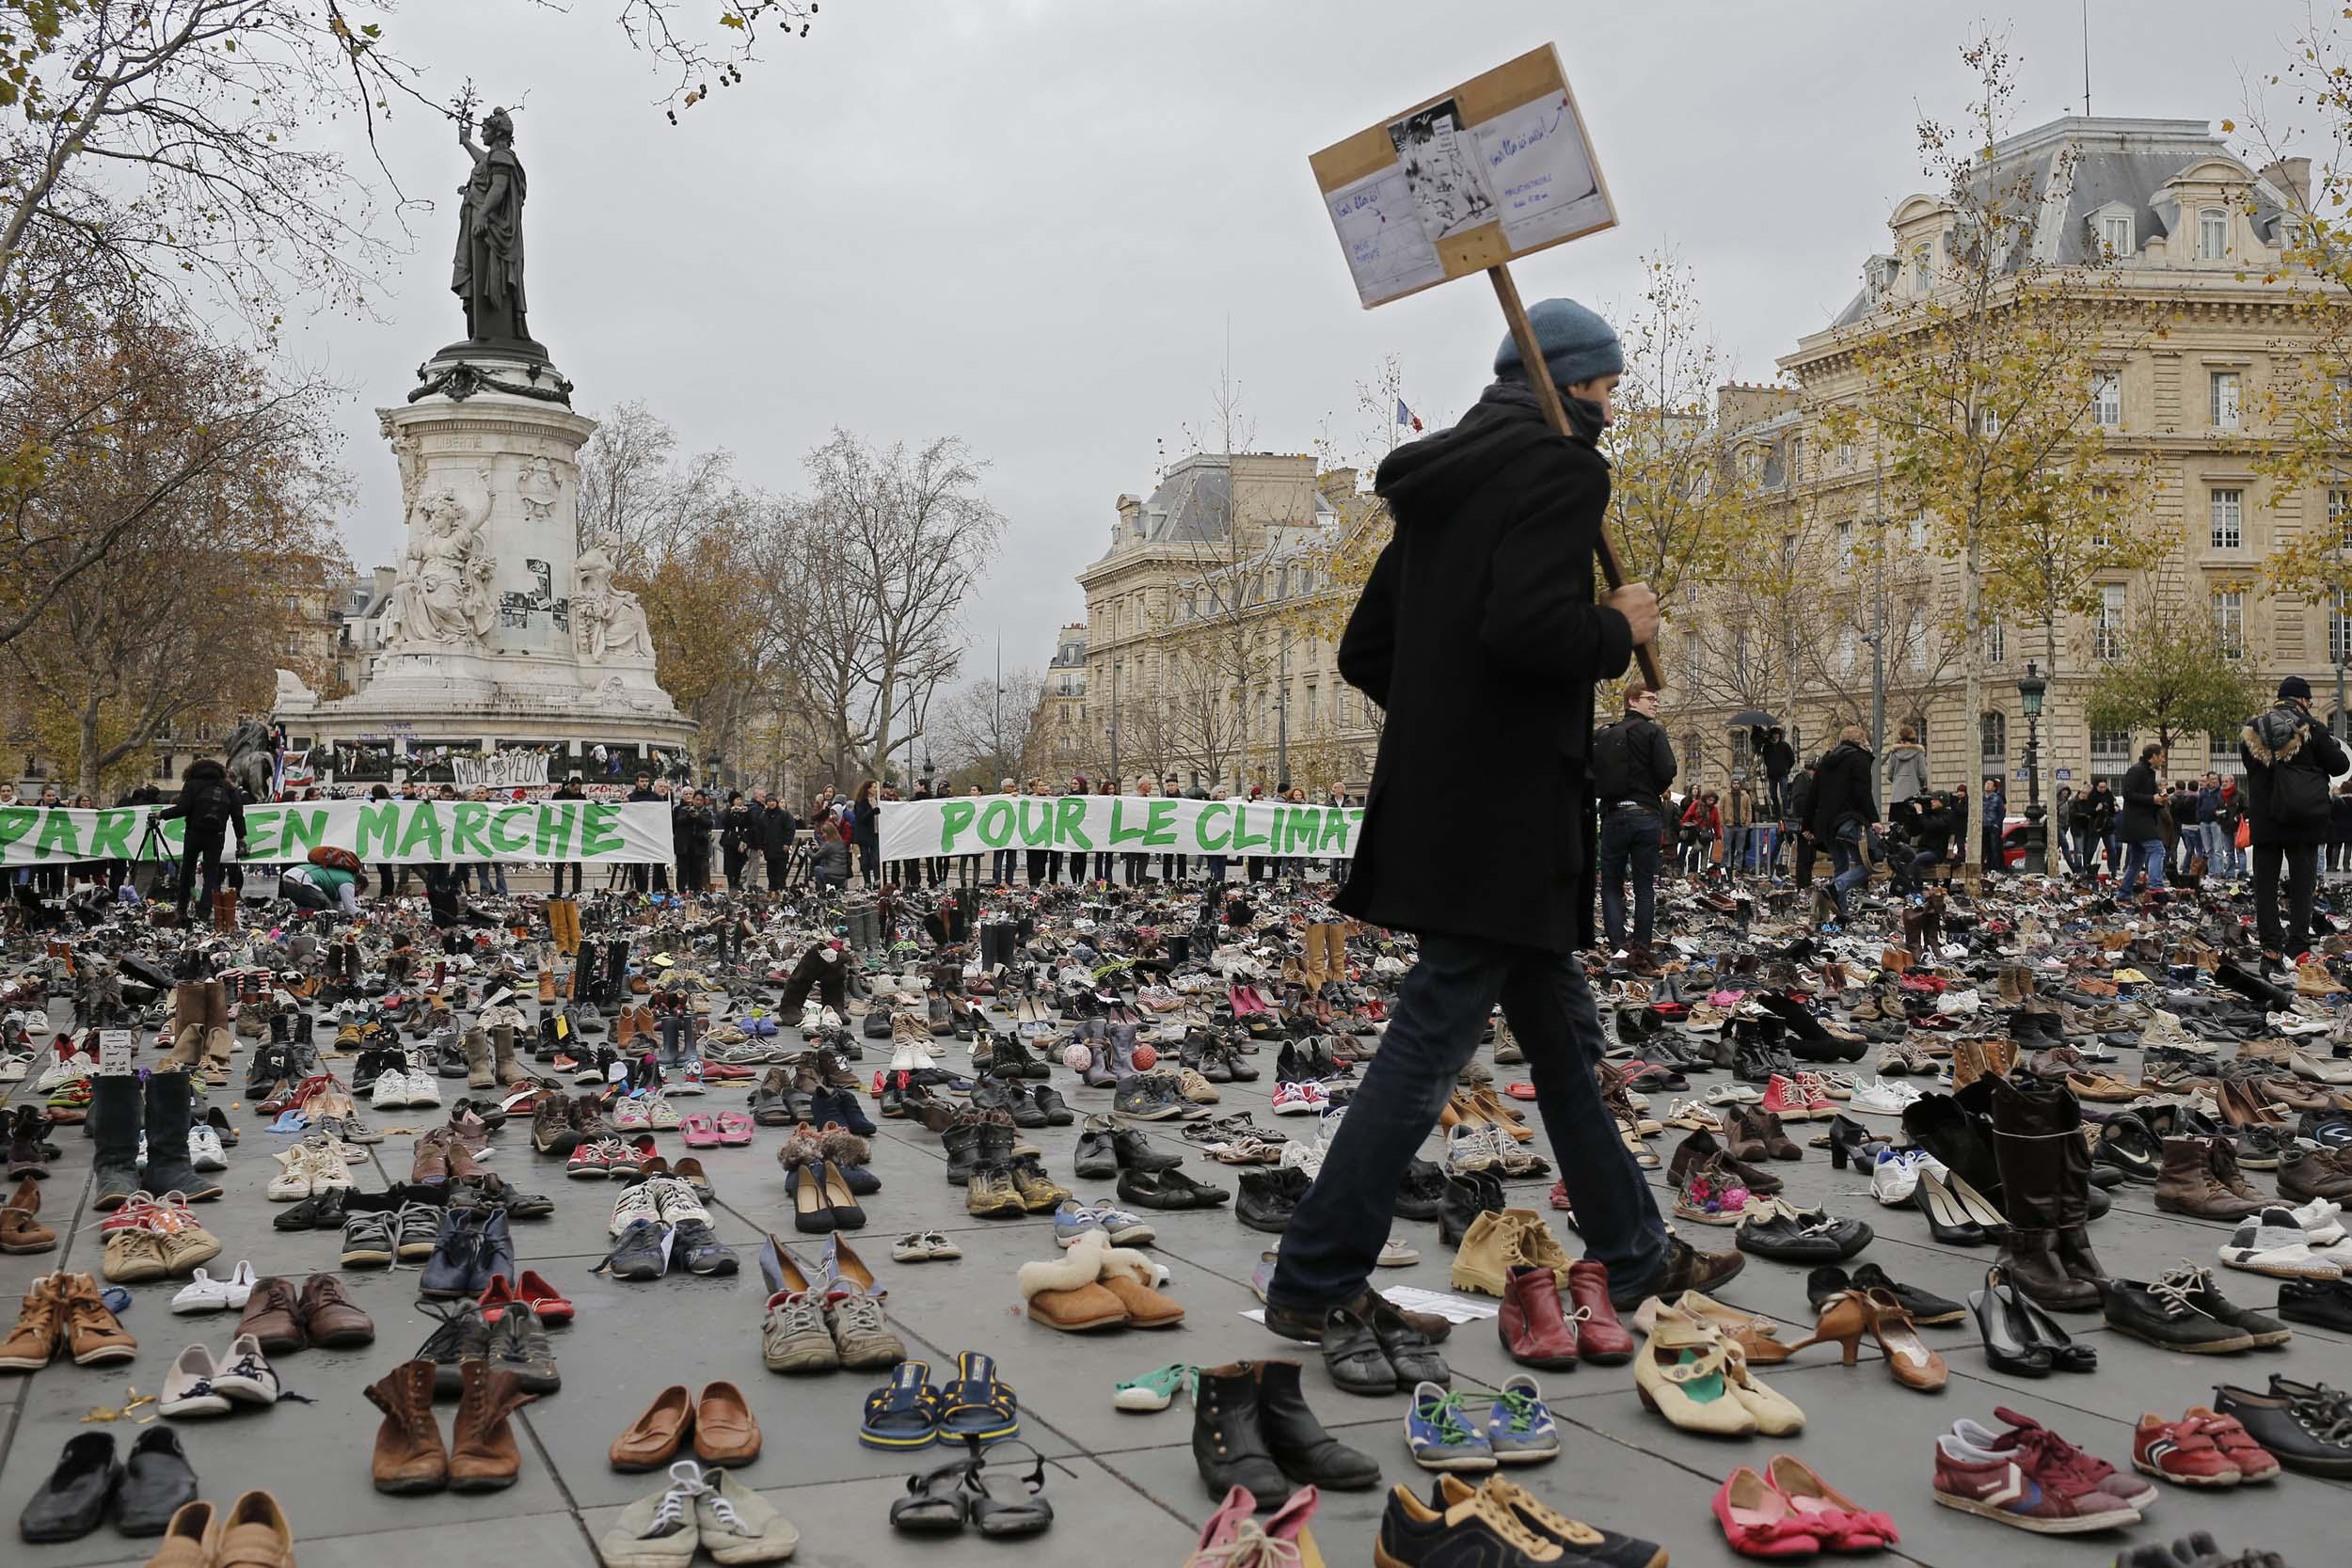 Tusindvis af sko er stillet op på Place de la Republique i Paris i en yderst fredelig demonstration arrangeret af ngo’en Avaaz i forbindelse med COP21.
Foto: Laurant Cipriani / AP / Polfoto